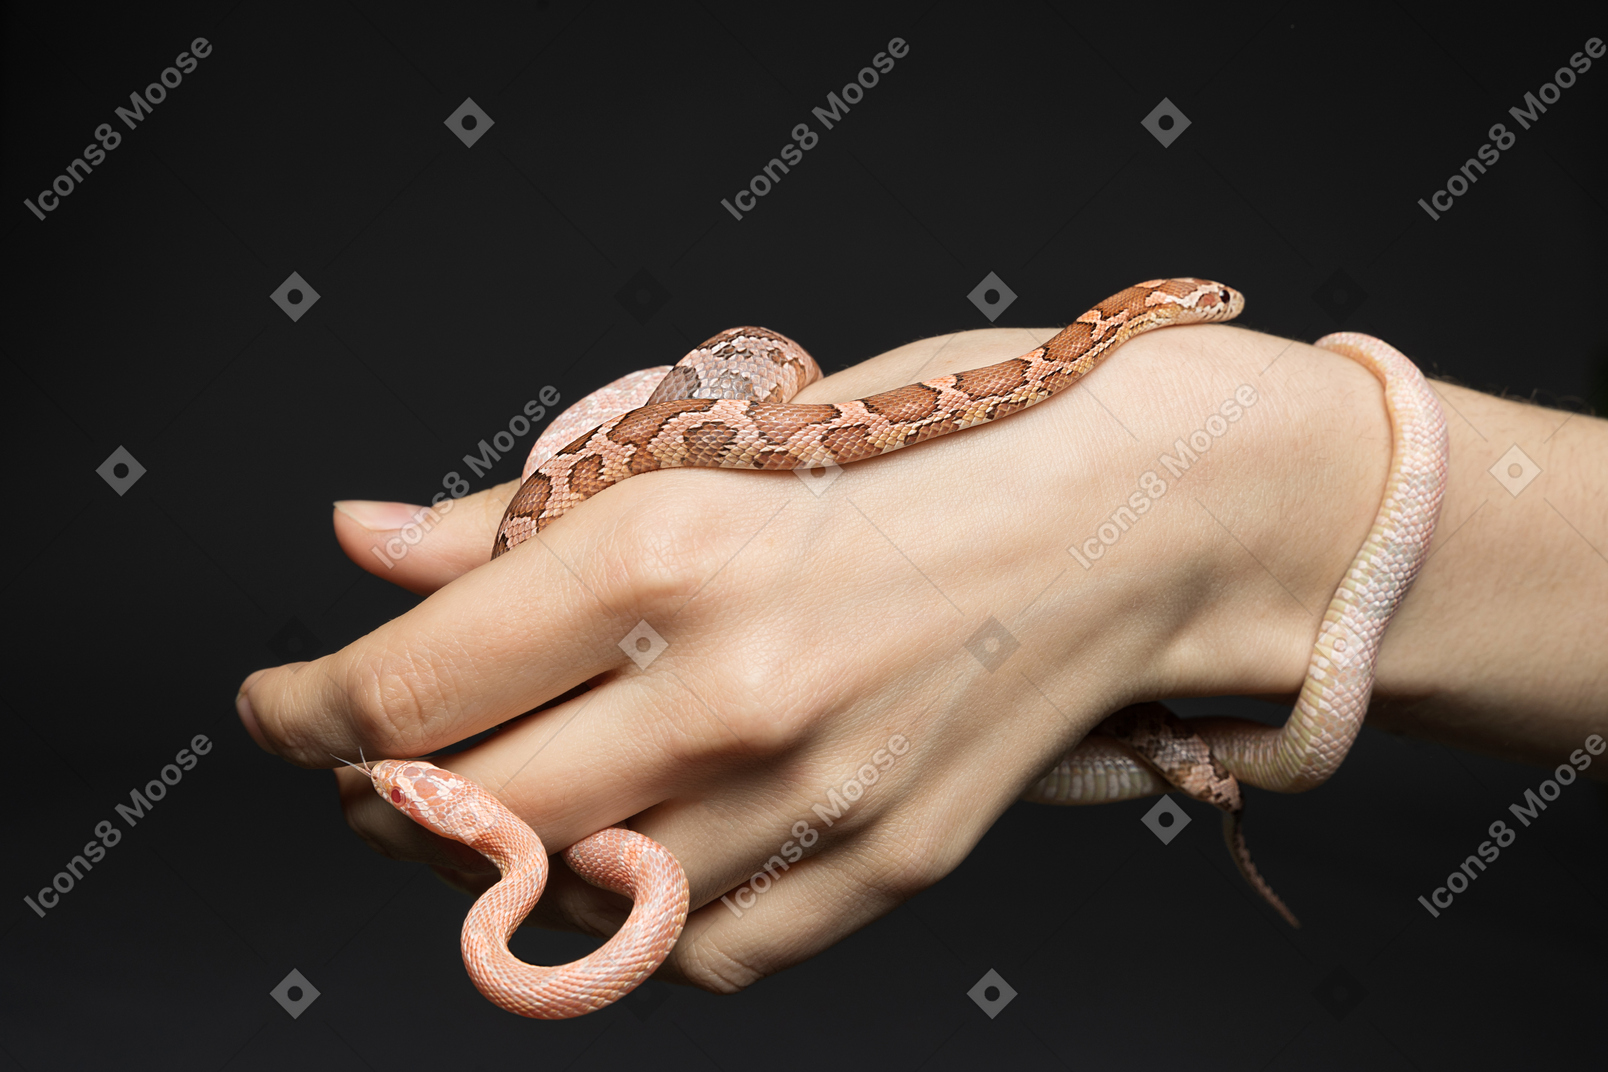 Dos pequeñas serpientes de maíz en la mano del ser humano